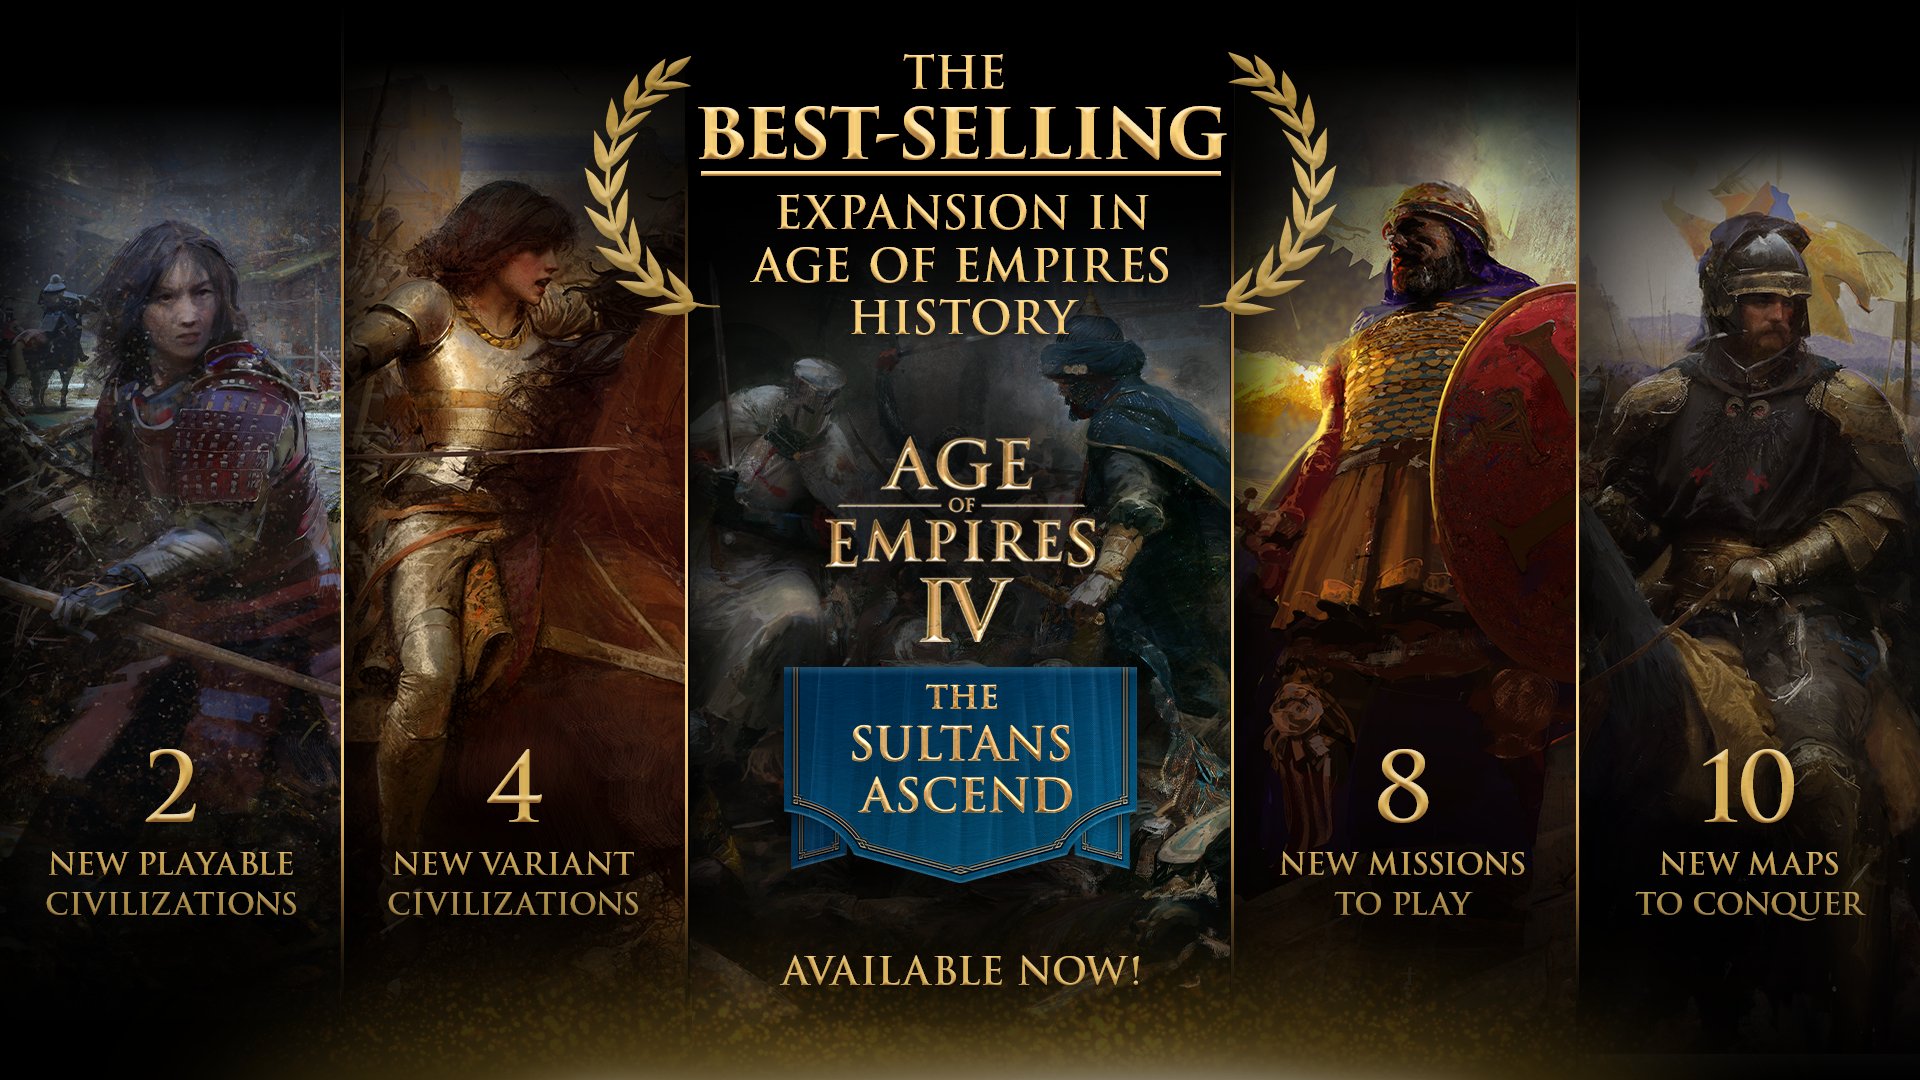 “苏丹突起”成《帝国时期》全系列DLC销量最佳